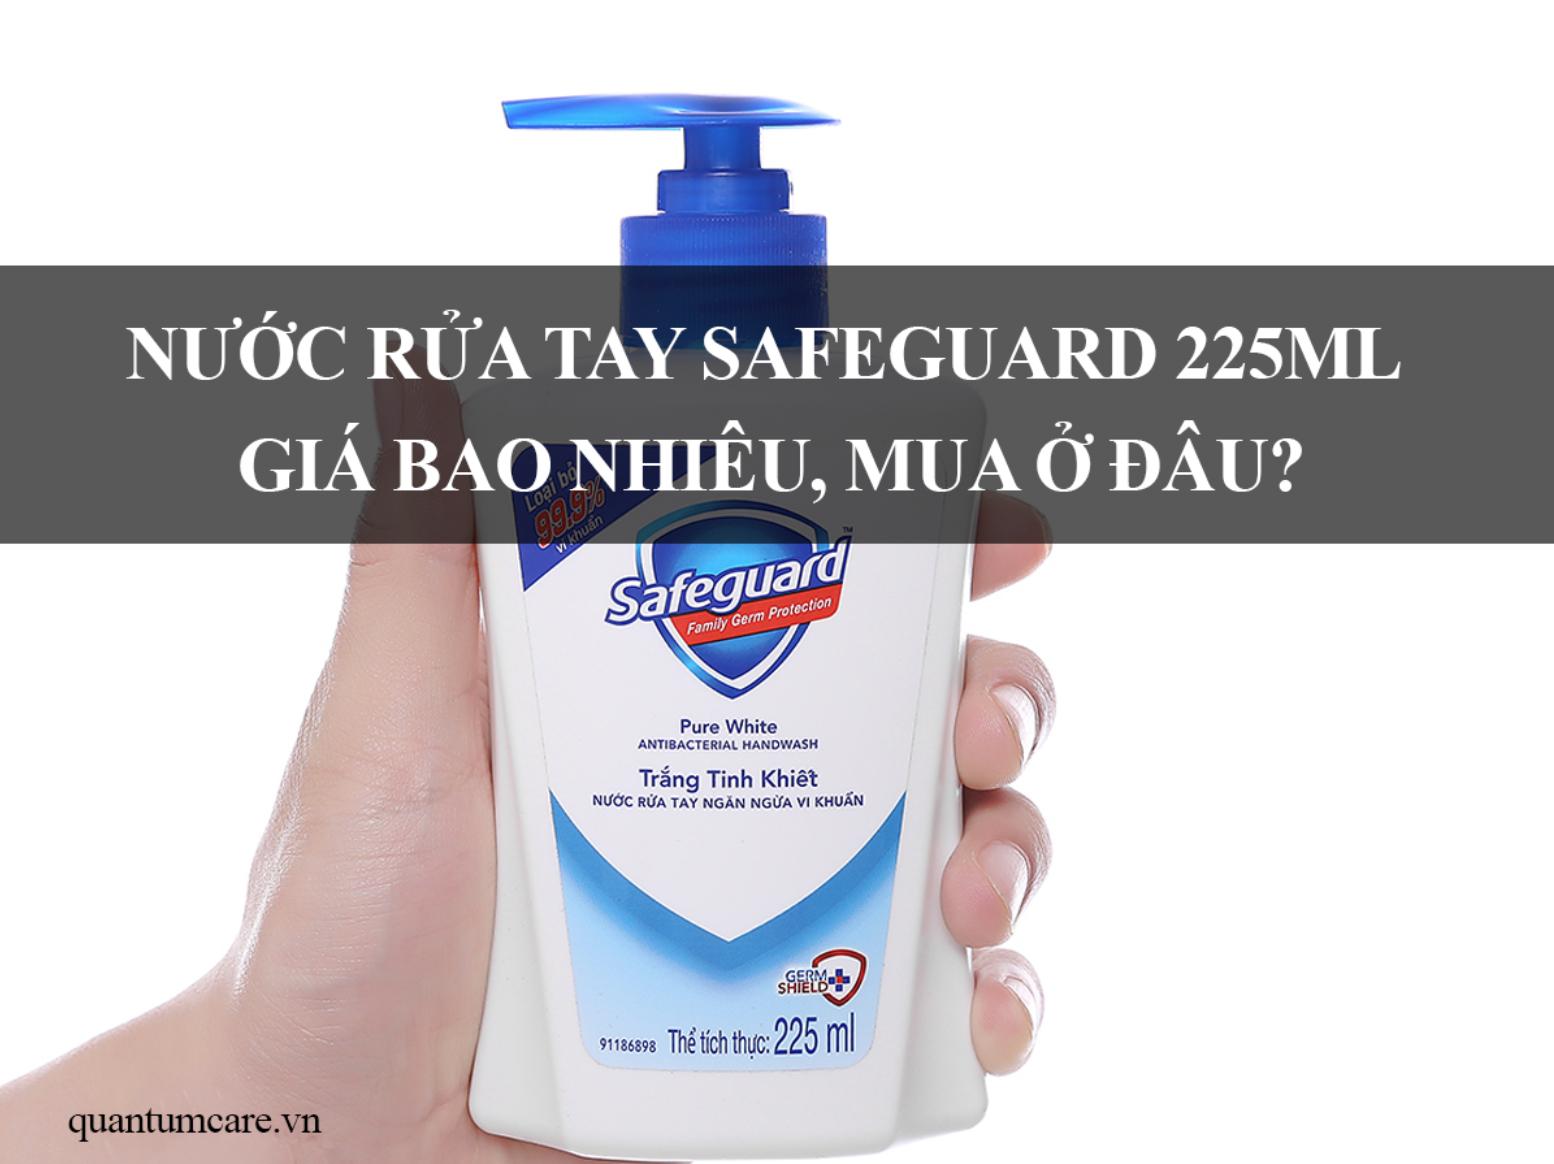 Nước rửa tay diệt khuẩn safeguard 225ml giá bao nhiêu, mua ở đâu?